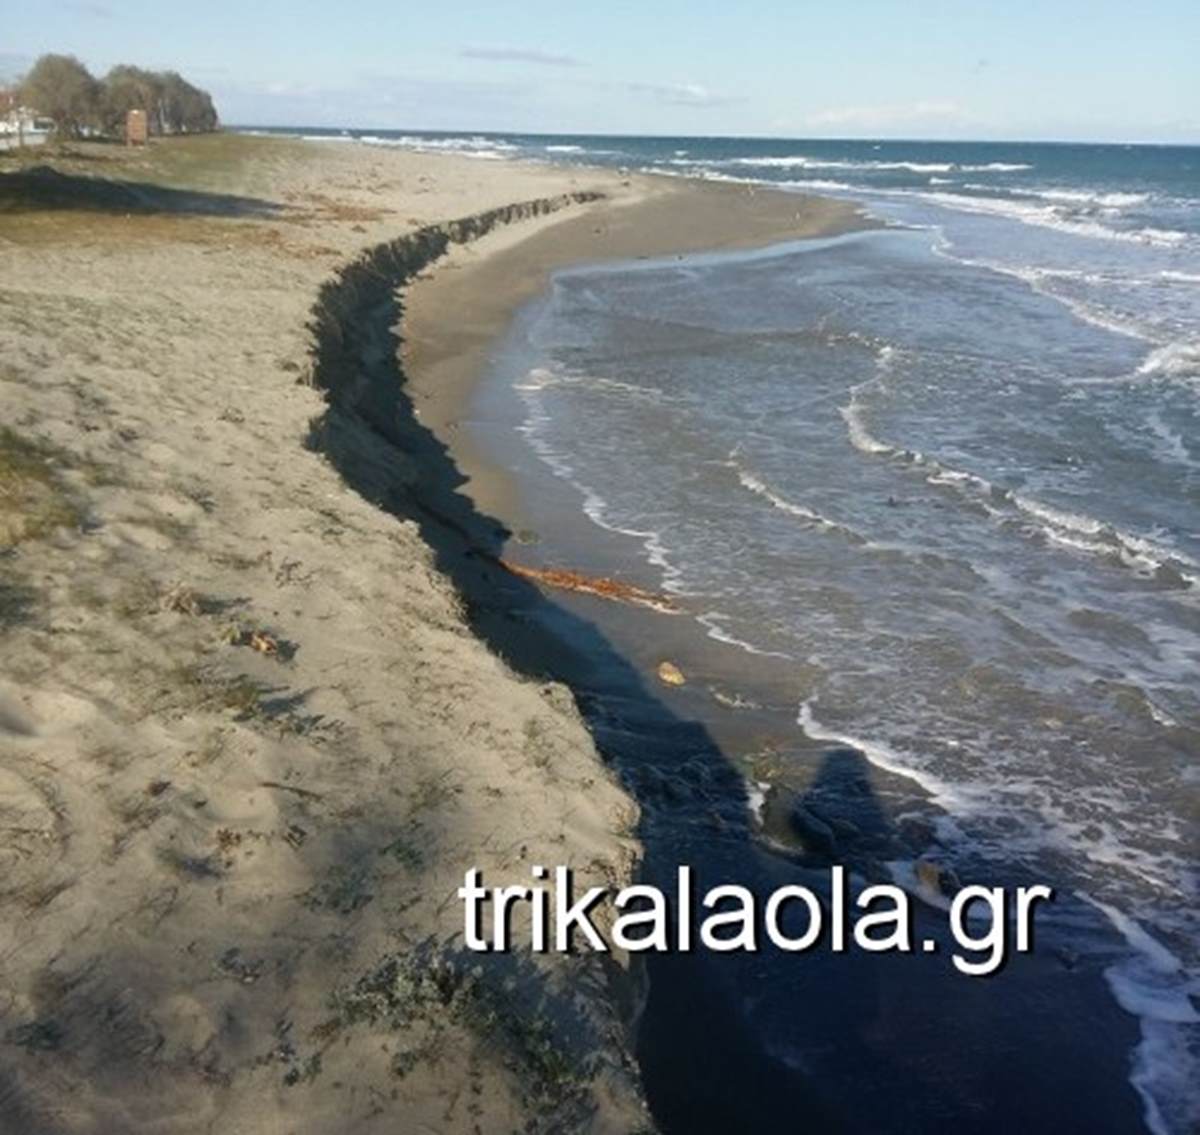 Απίστευτο… τα κύματα κατάπιαν ολόκληρη παραλία στα Μεσάγκαλα Λάρισας (φωτό)